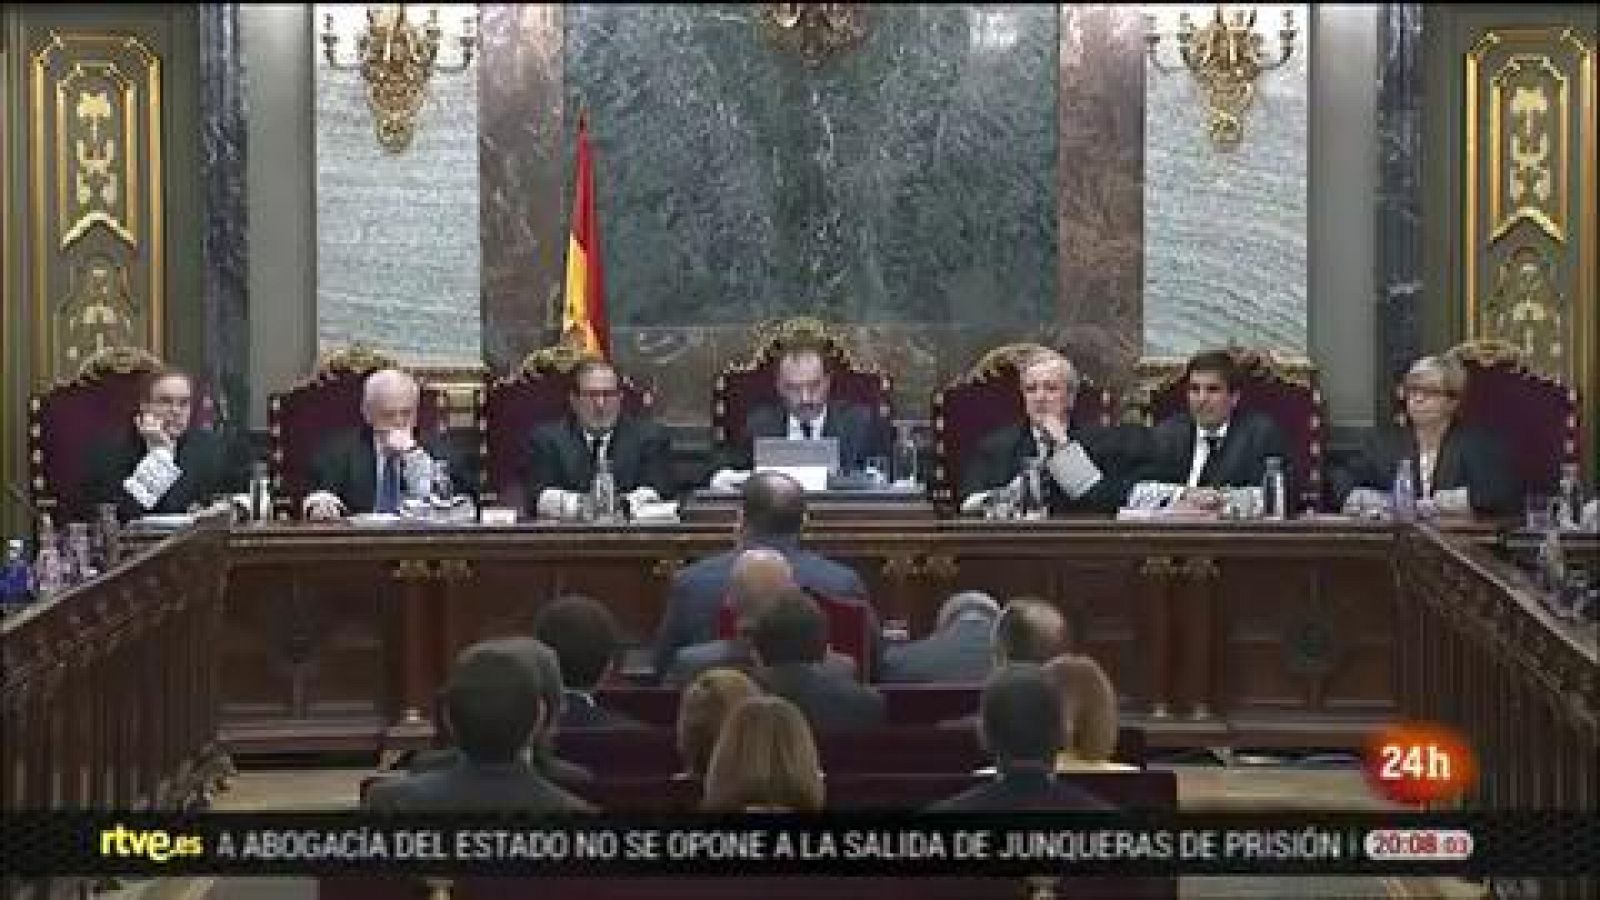 Juicio procés: Los acusados piden al Supremo devolver al "terreno de la política" el conflicto en Cataluña